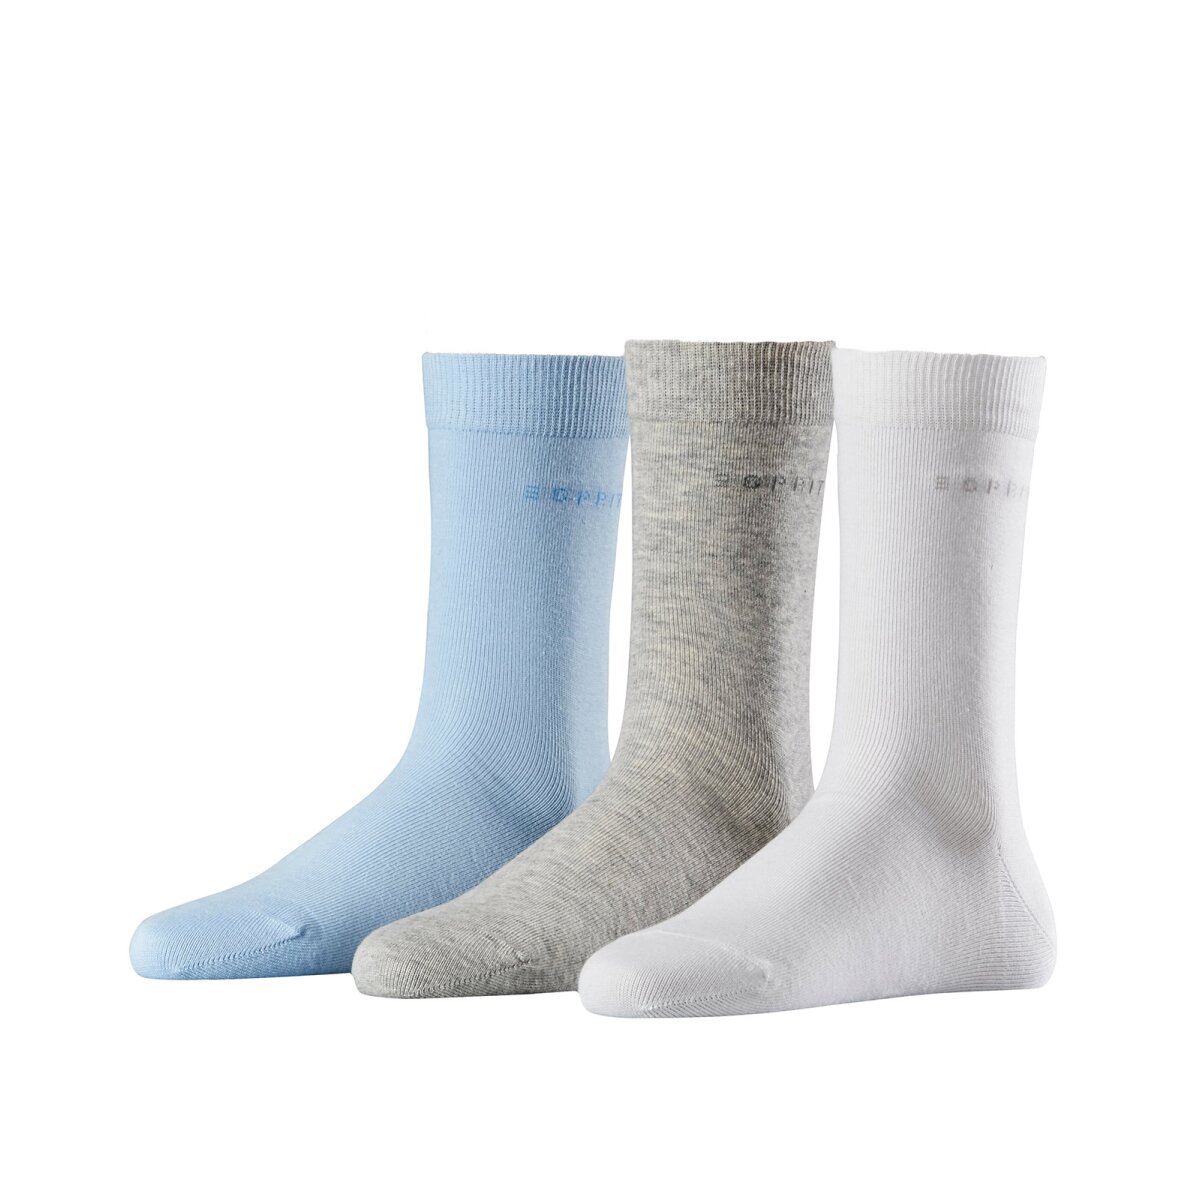 Esprit Damen Socken Solid-Mix 3er Pack; Einheitsgröße 36-41 - Farbena